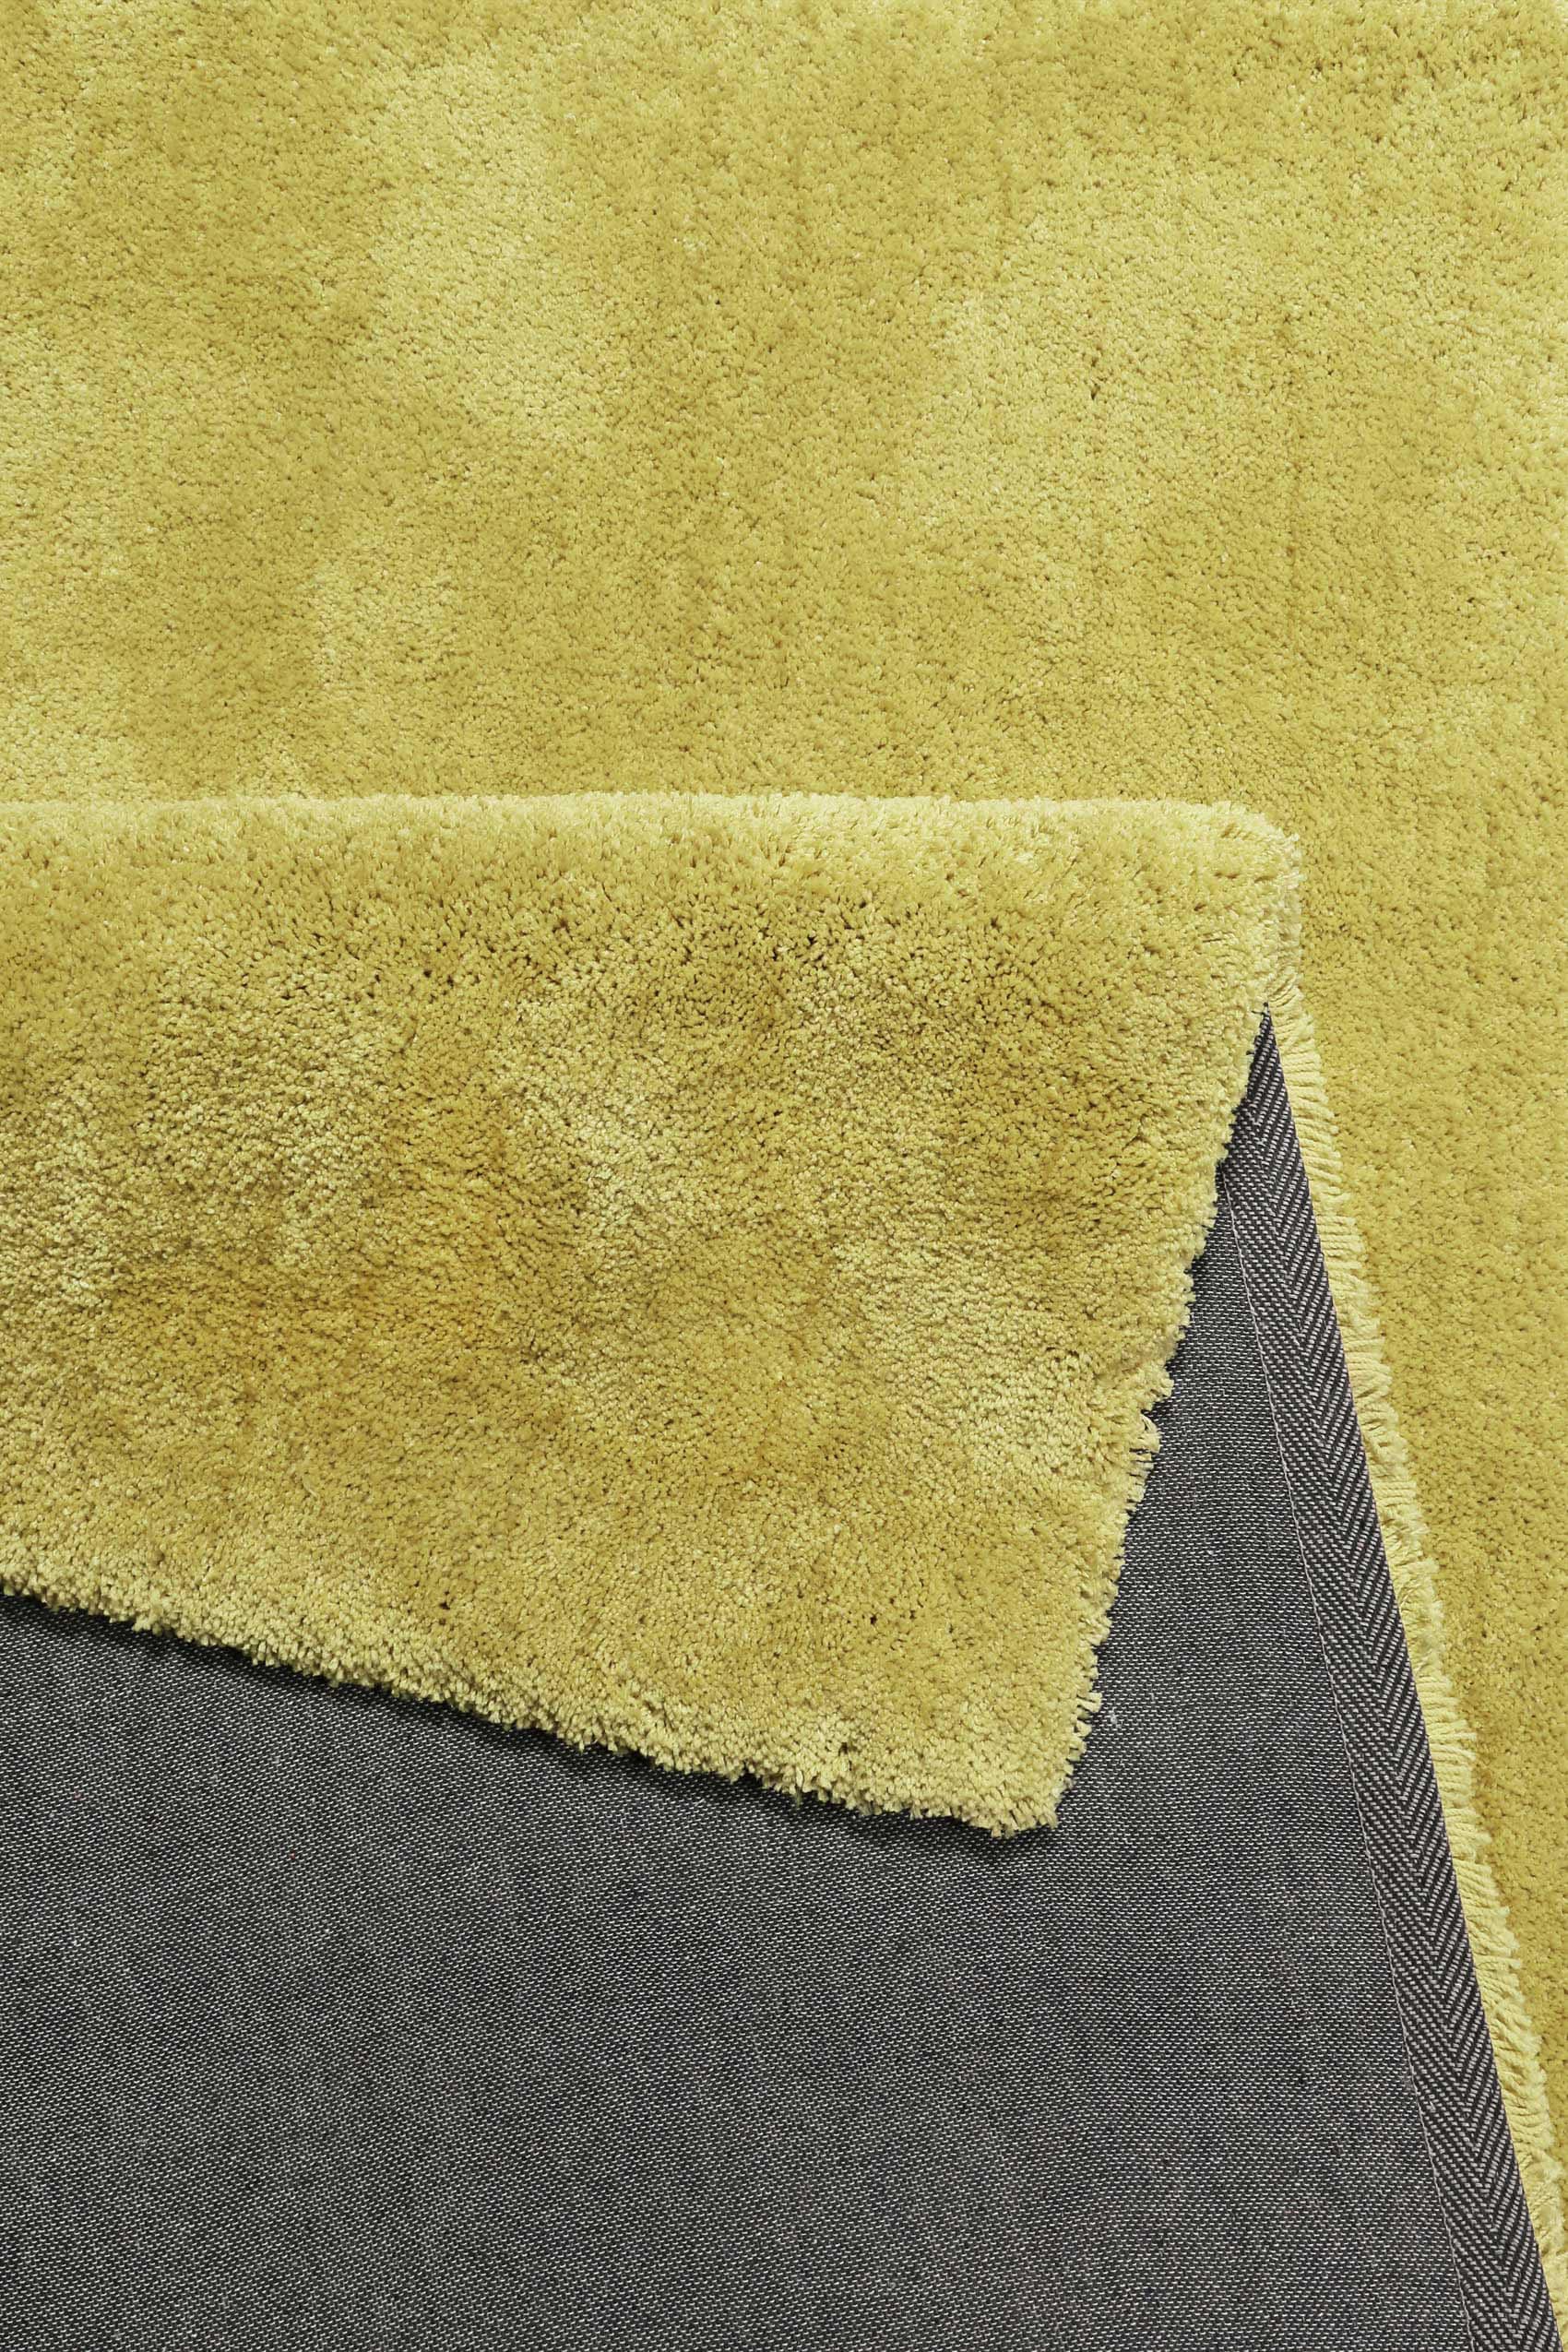 Esprit Hochflor-Teppich »Relaxx«, rechteckig, sehr weicher Hochflor große Farbauswahl, Wohnzimmer, dichter